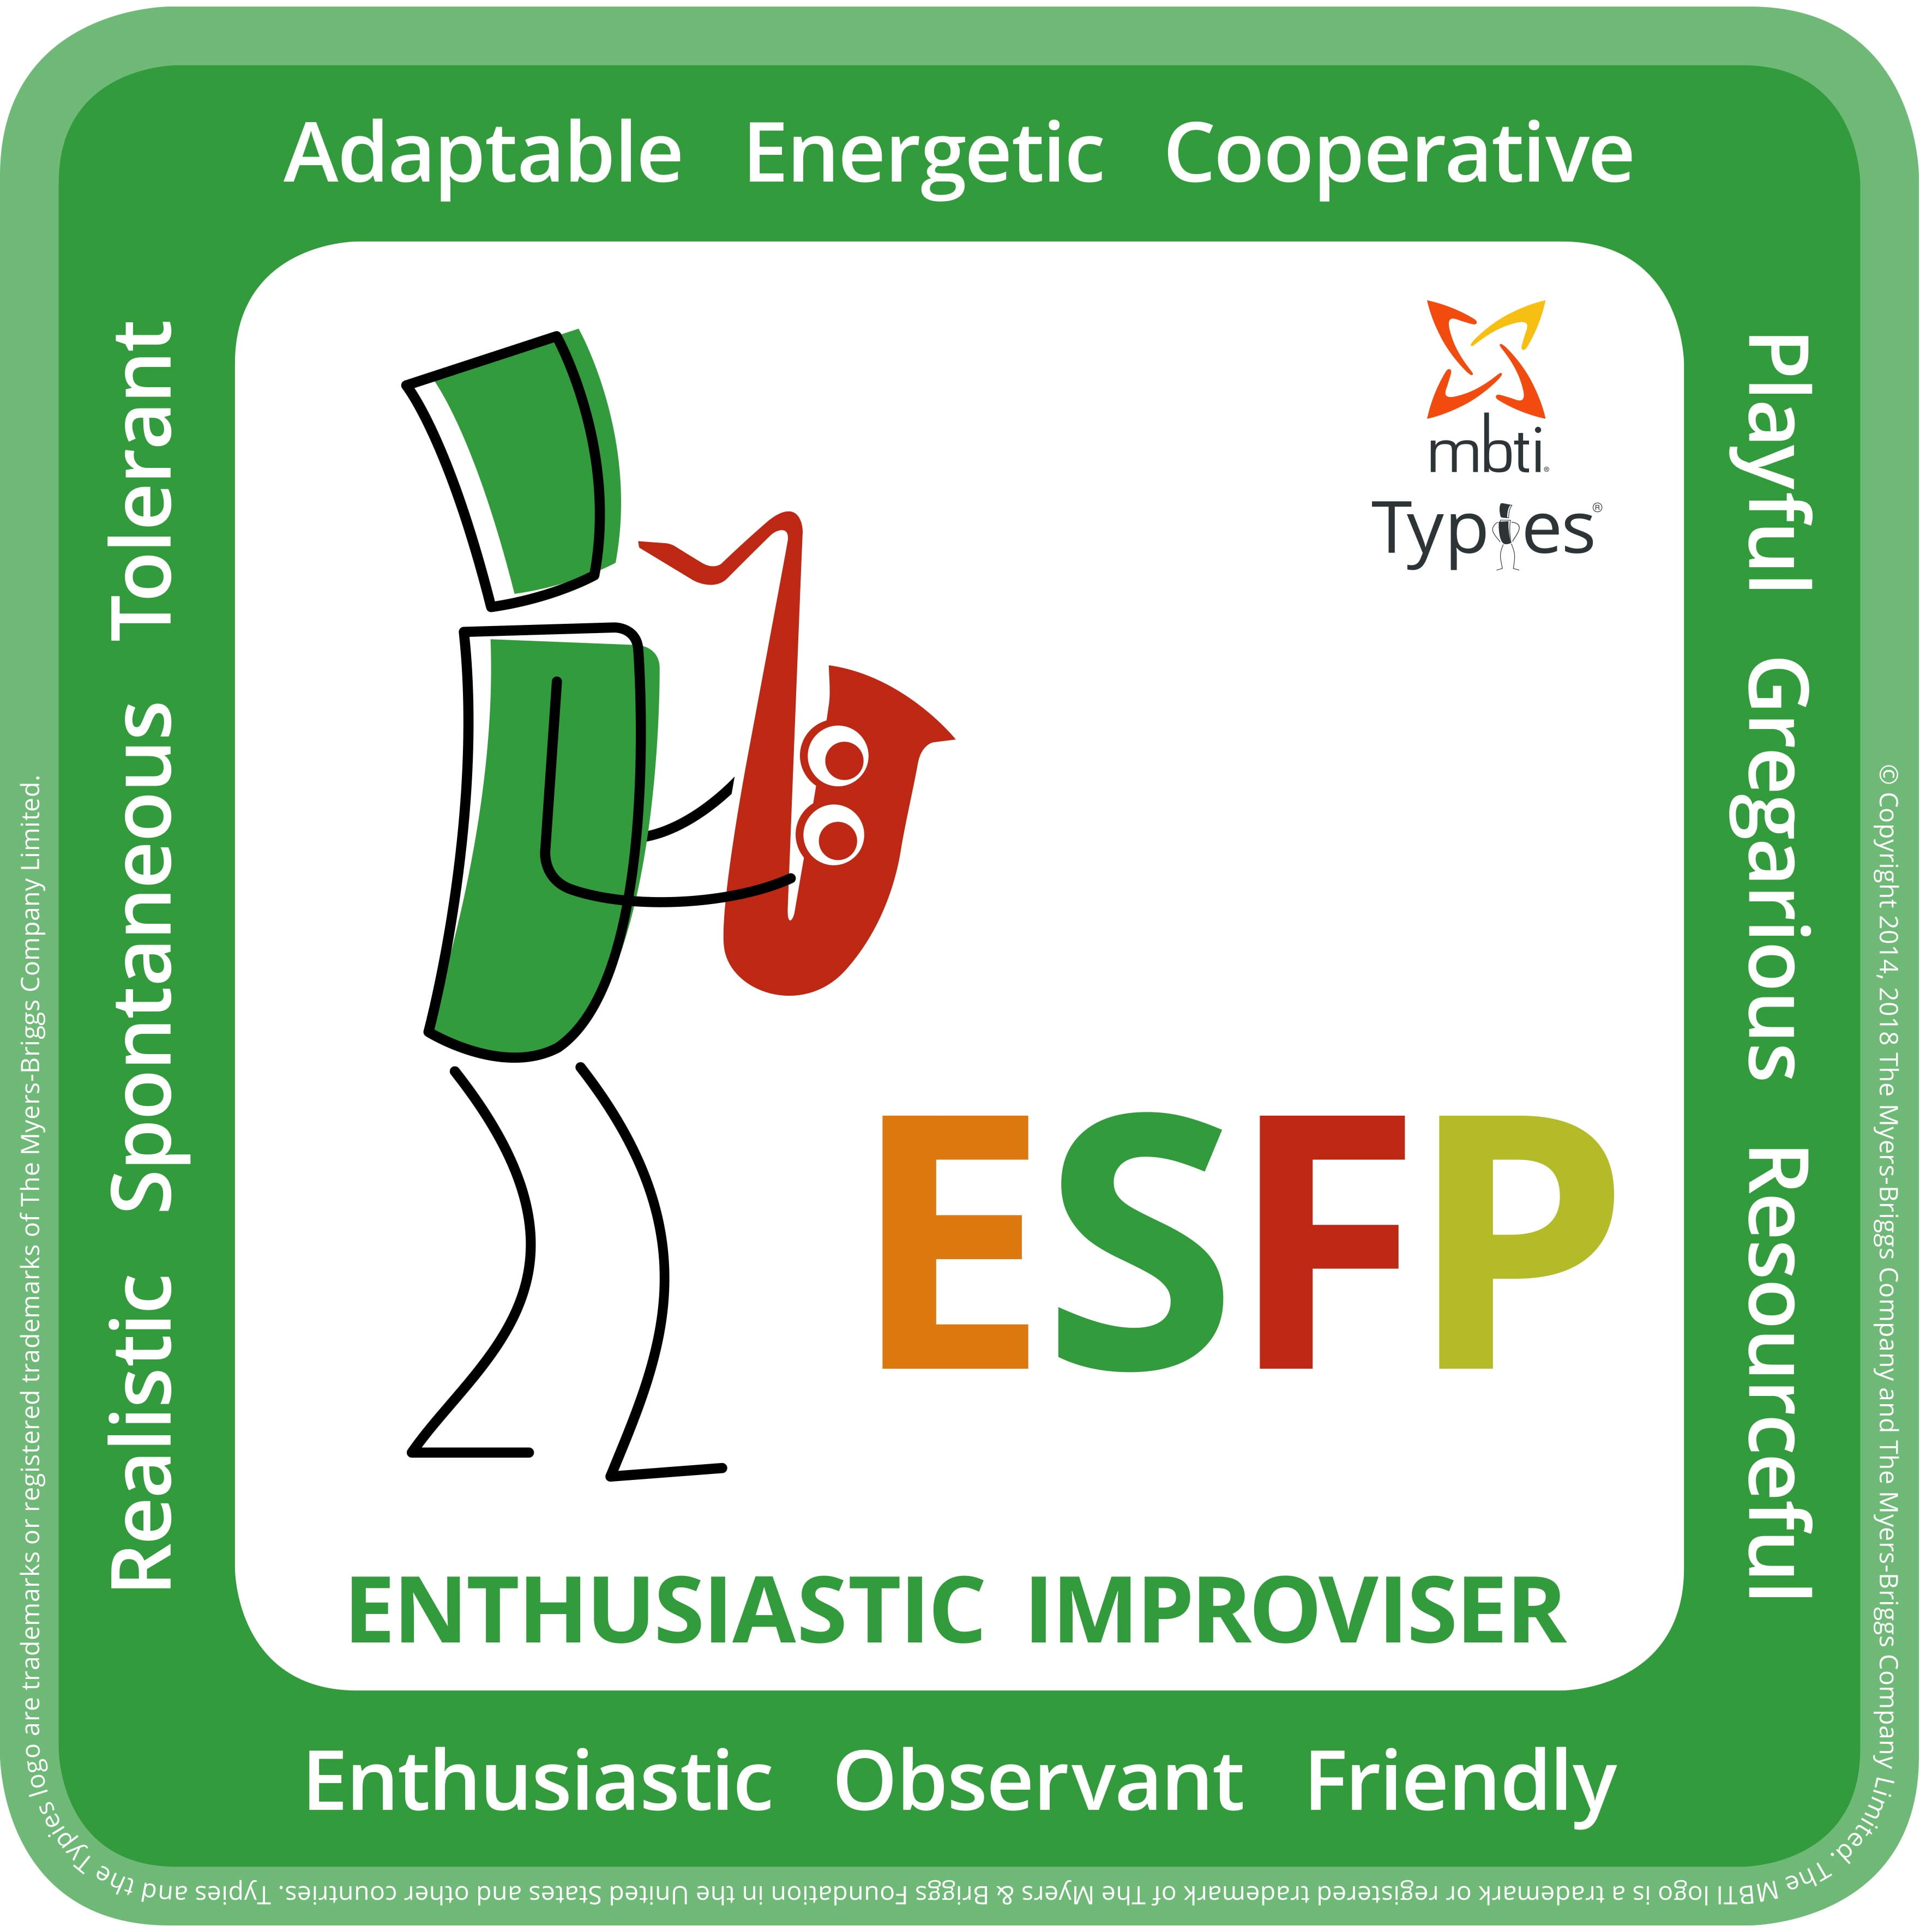 Esfp personality